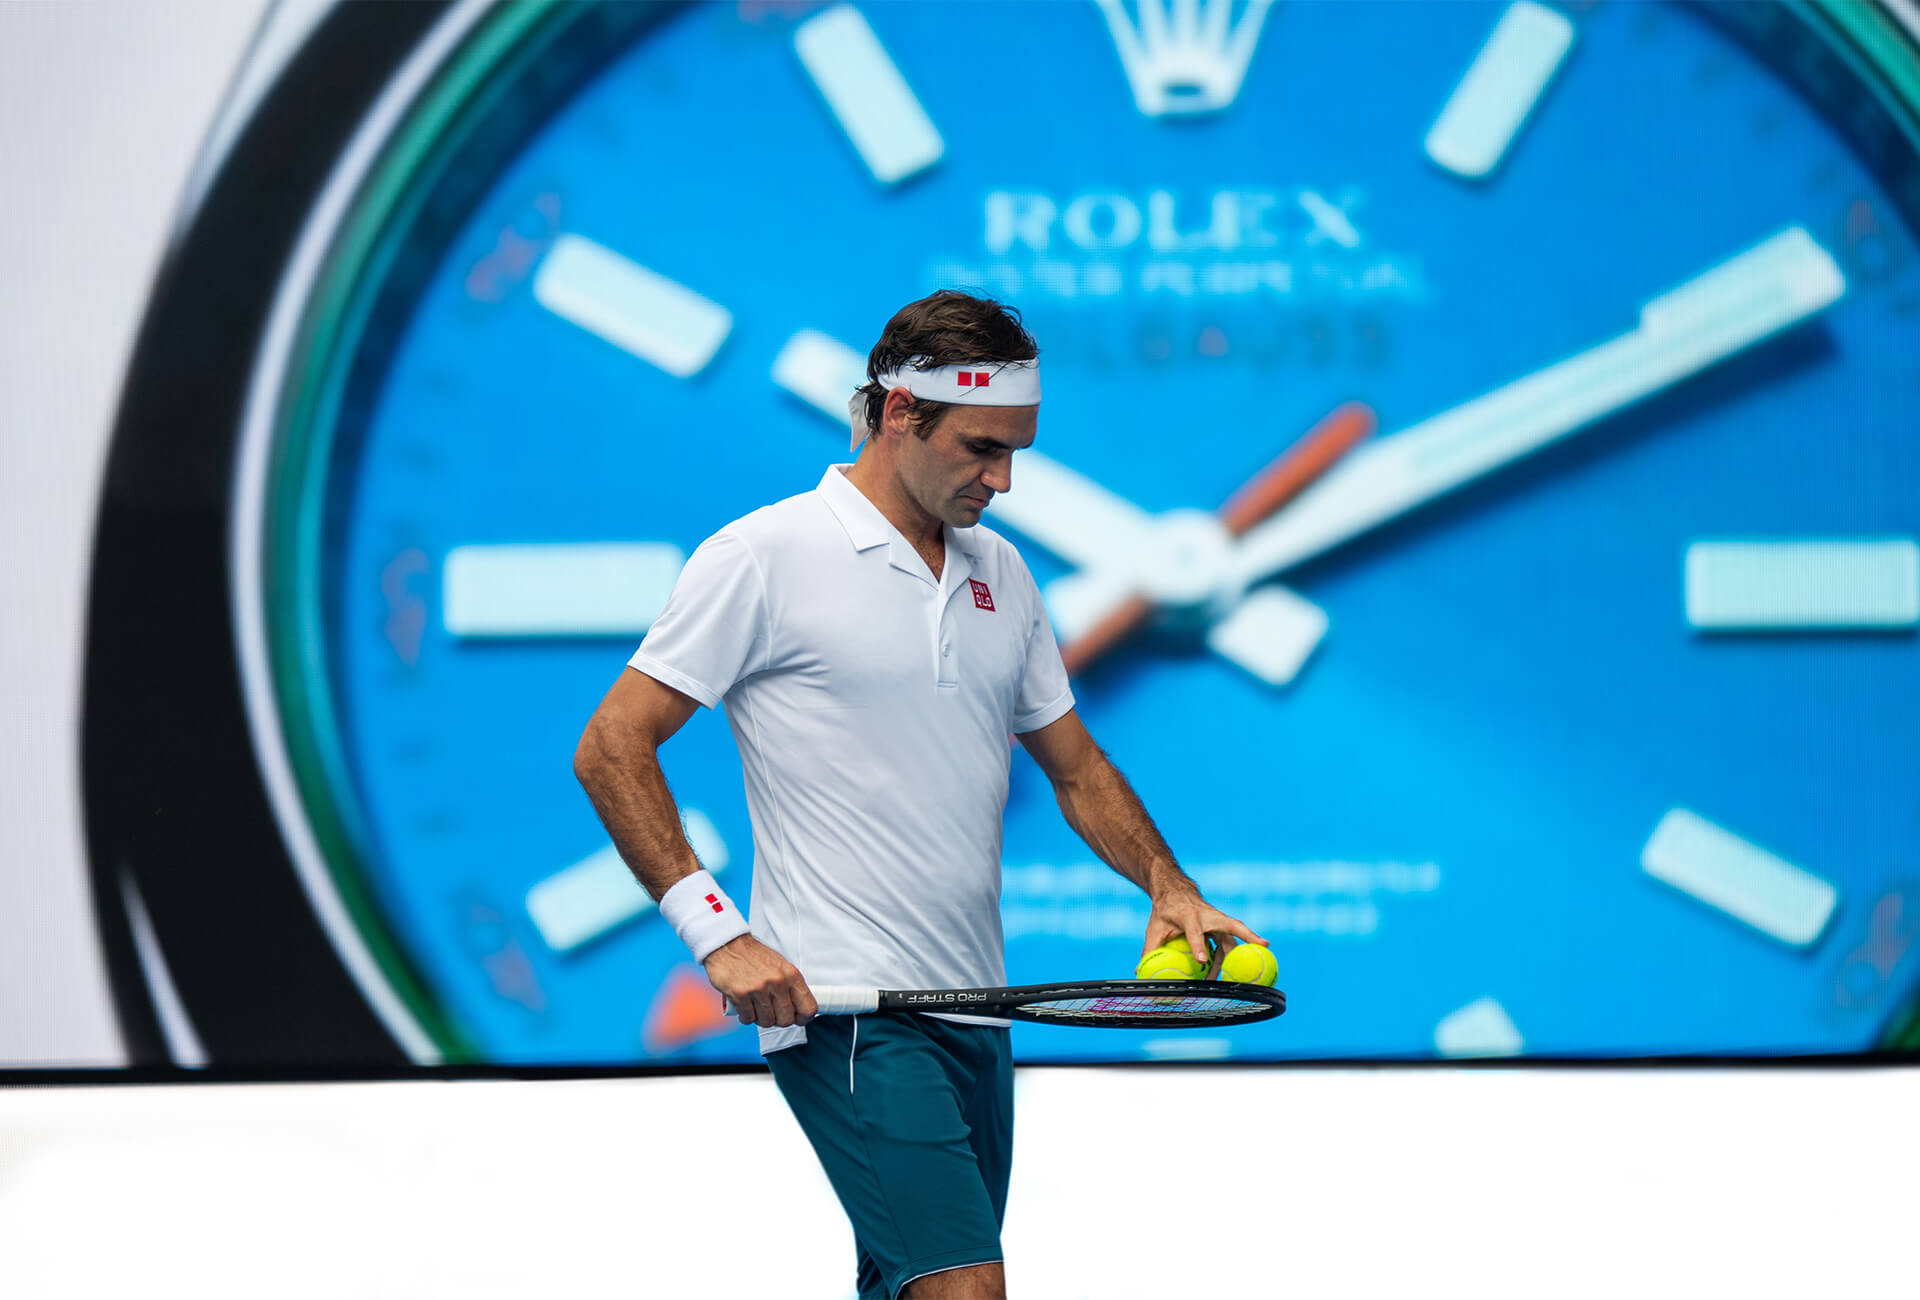 Rolex aces tennis sponsorship – FHH Journal